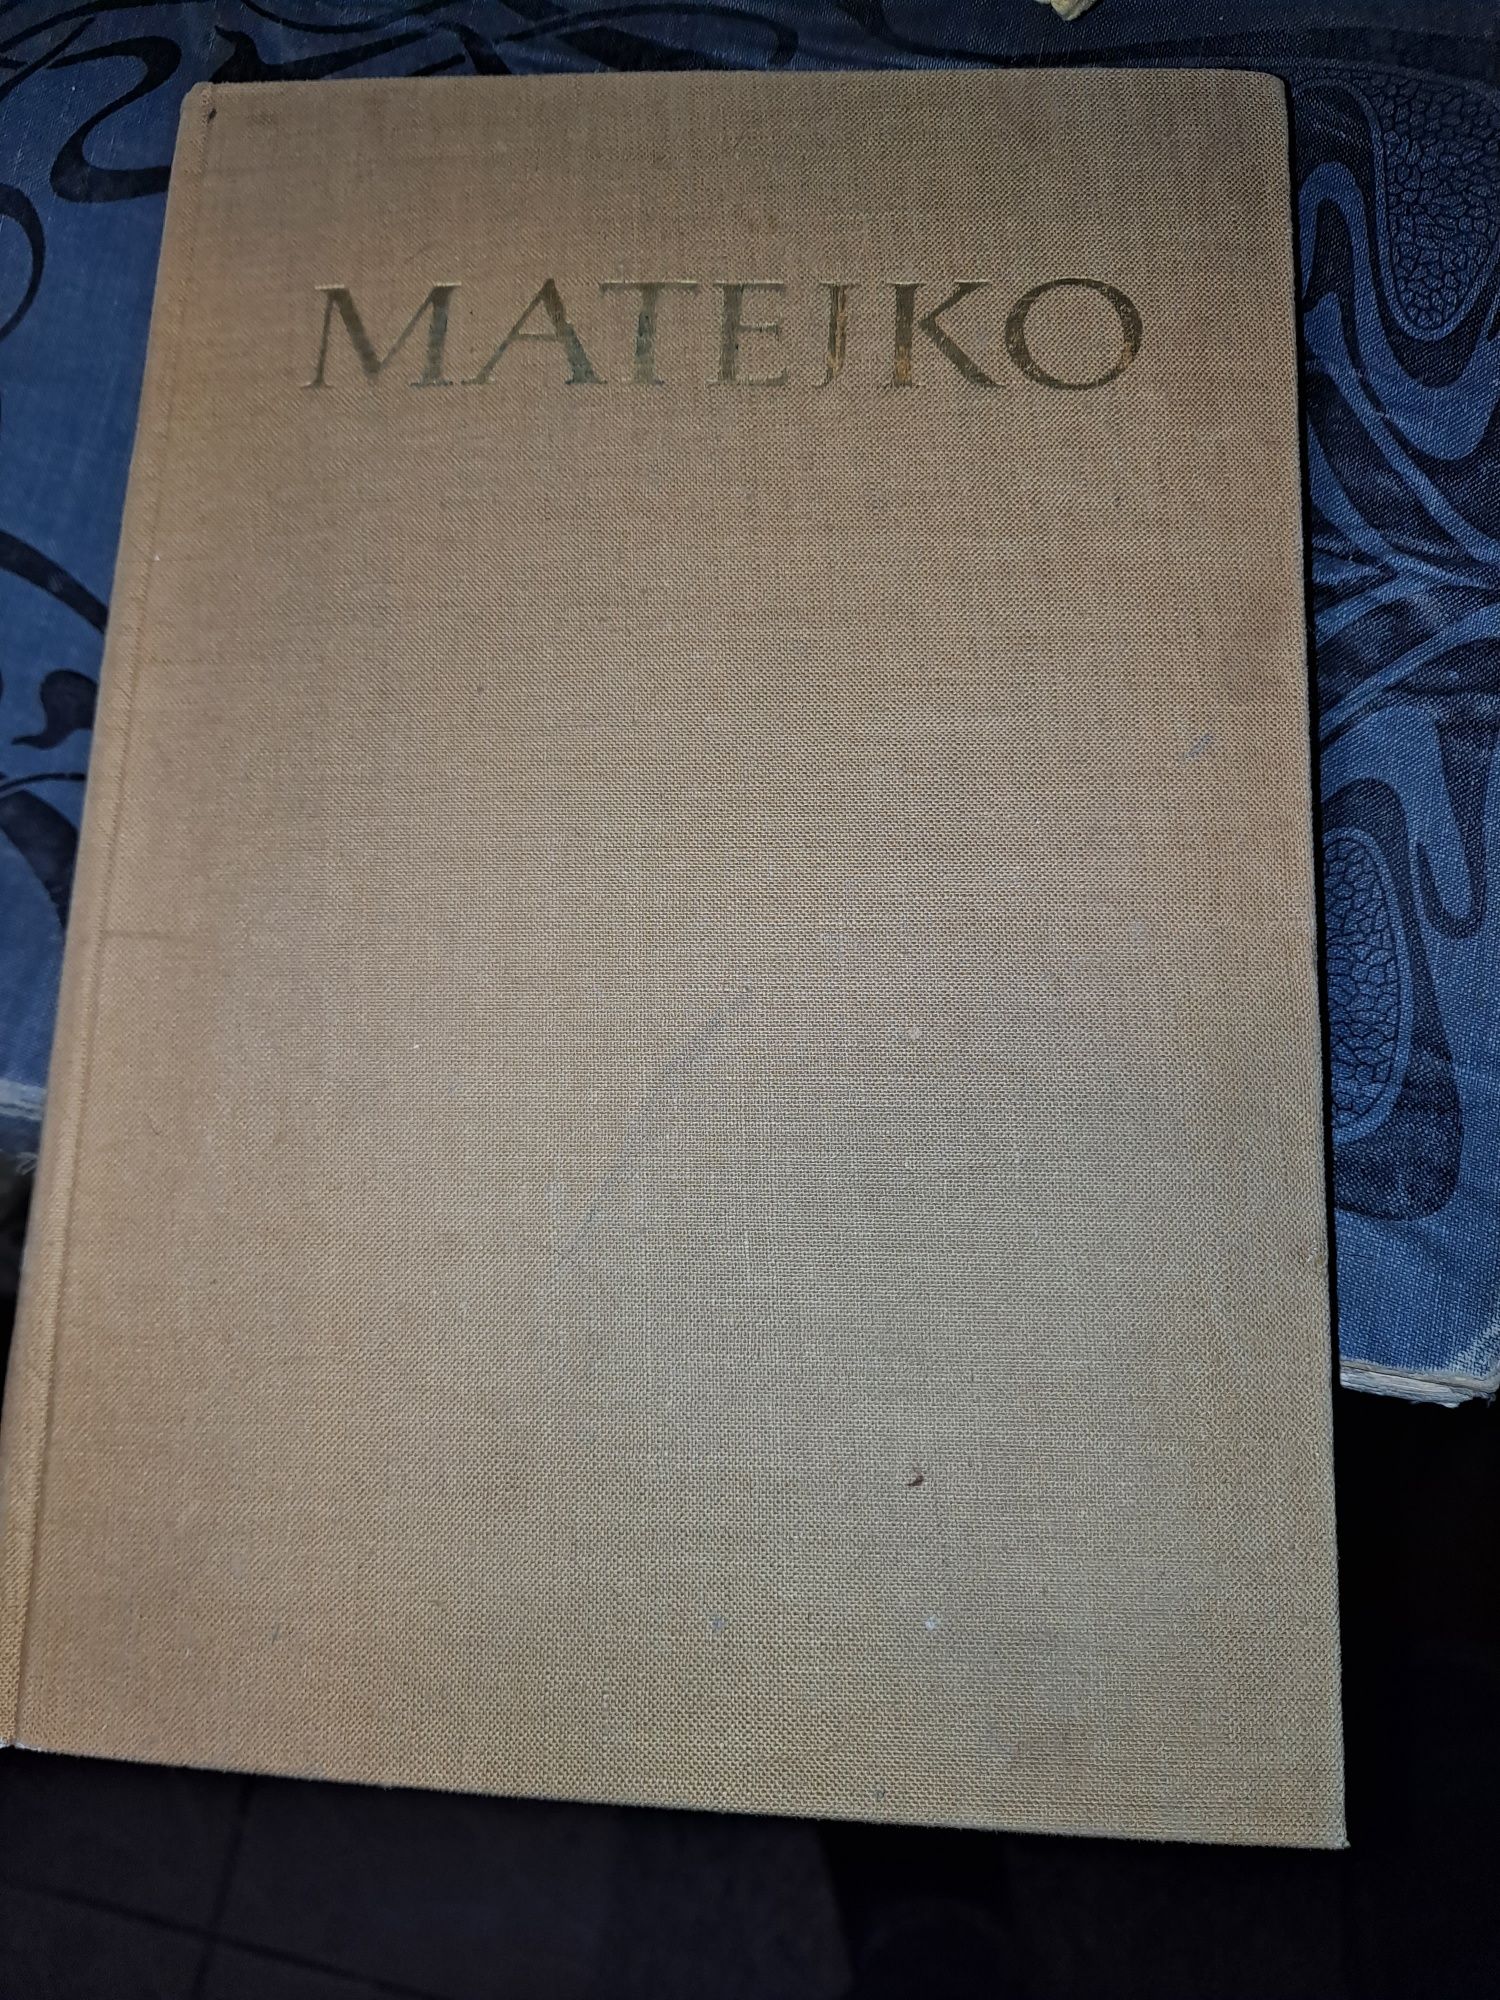 Książki Matejko i o Warszawie